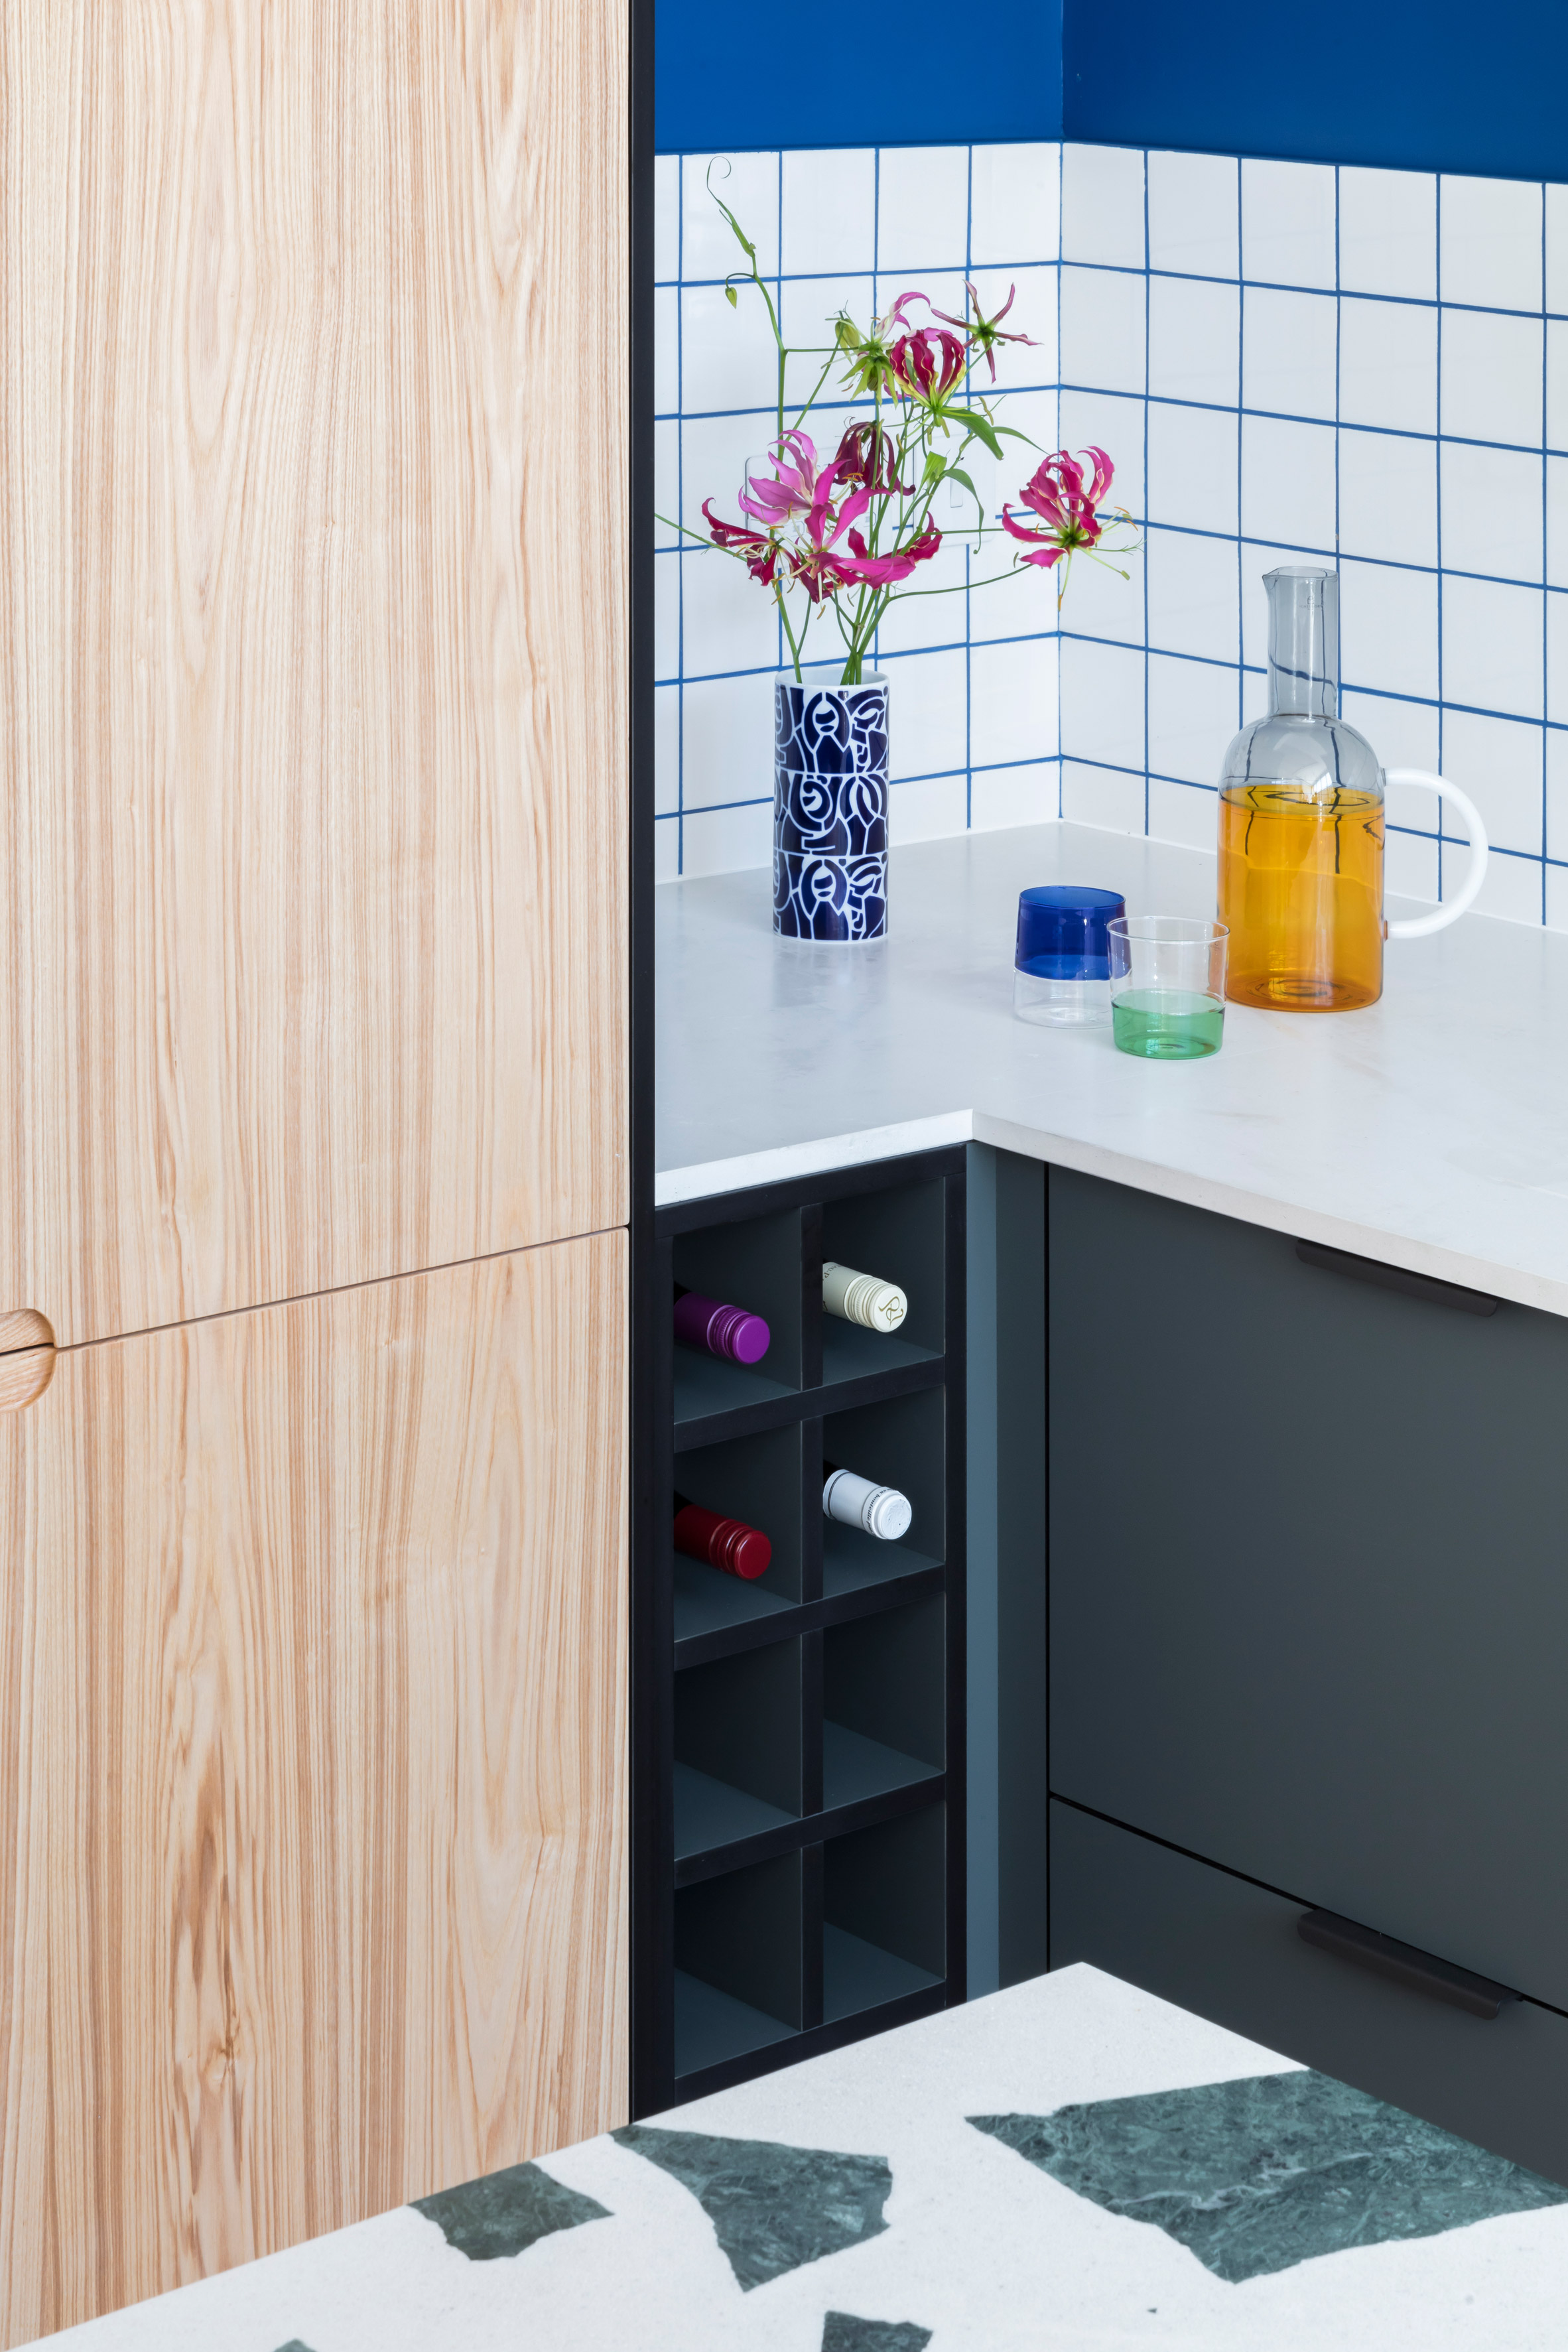 hølte opens hackney design studio for customising ikea kitchens